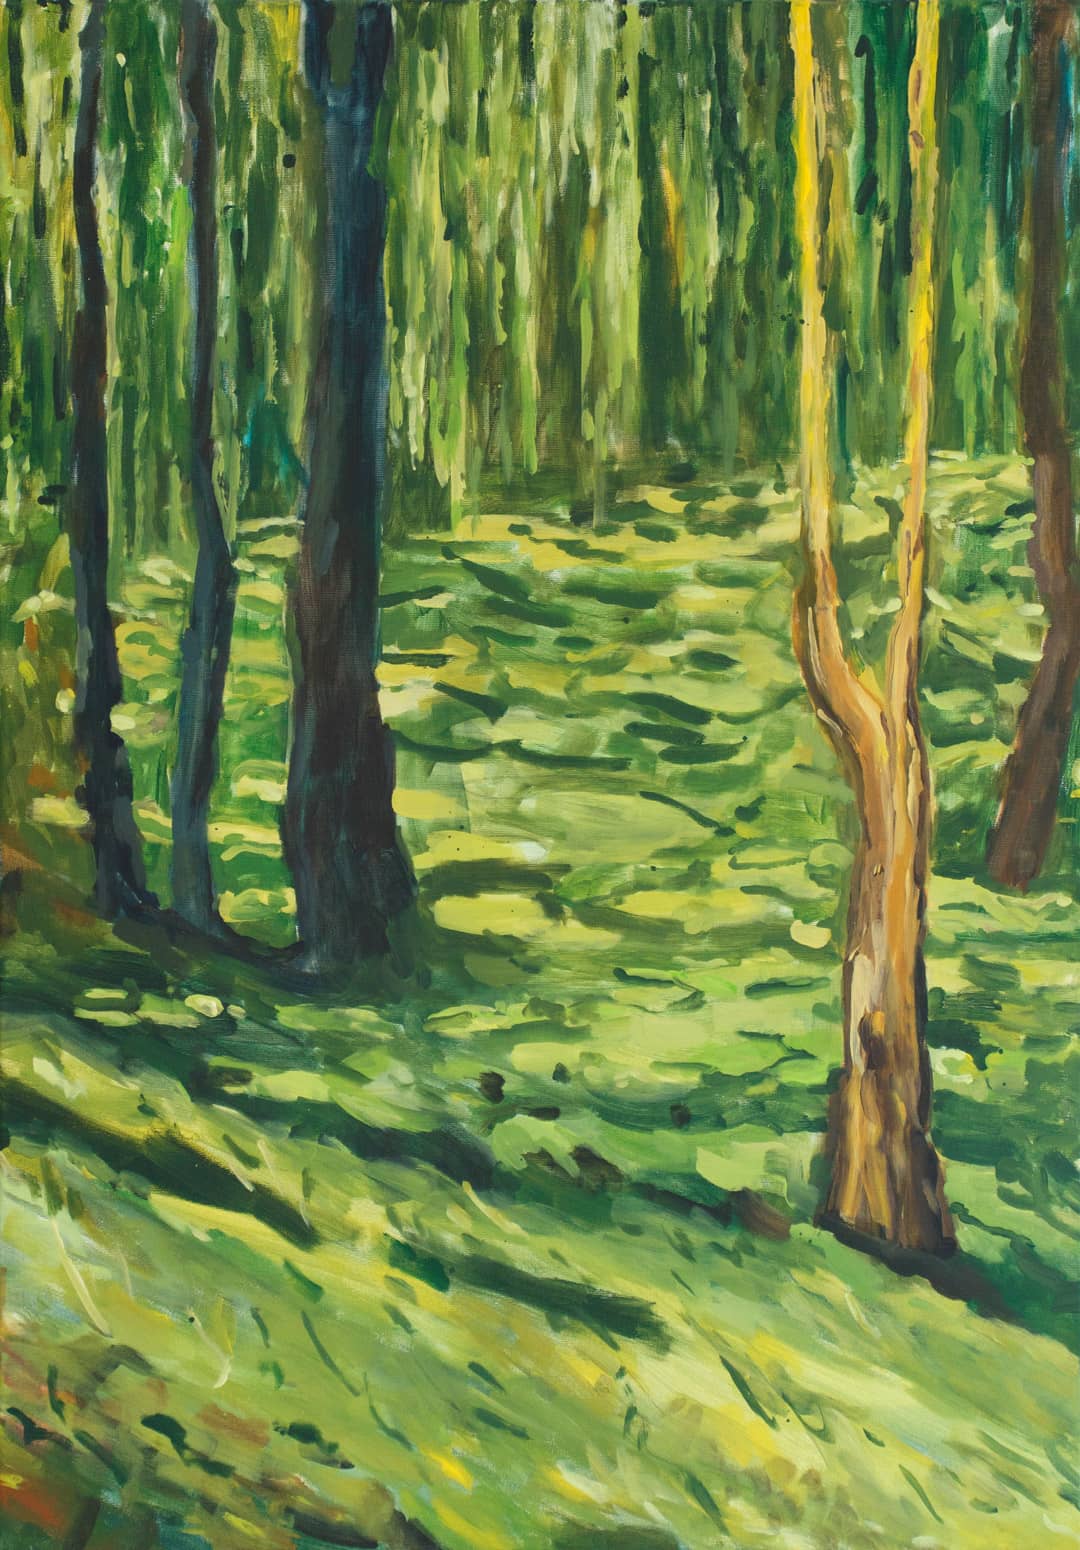 Idyllisches Waldstück bei Nürnberg mit Bäumen und grünem Blätterdickicht als impressionistische Malerei in Acryl auf Leinwand